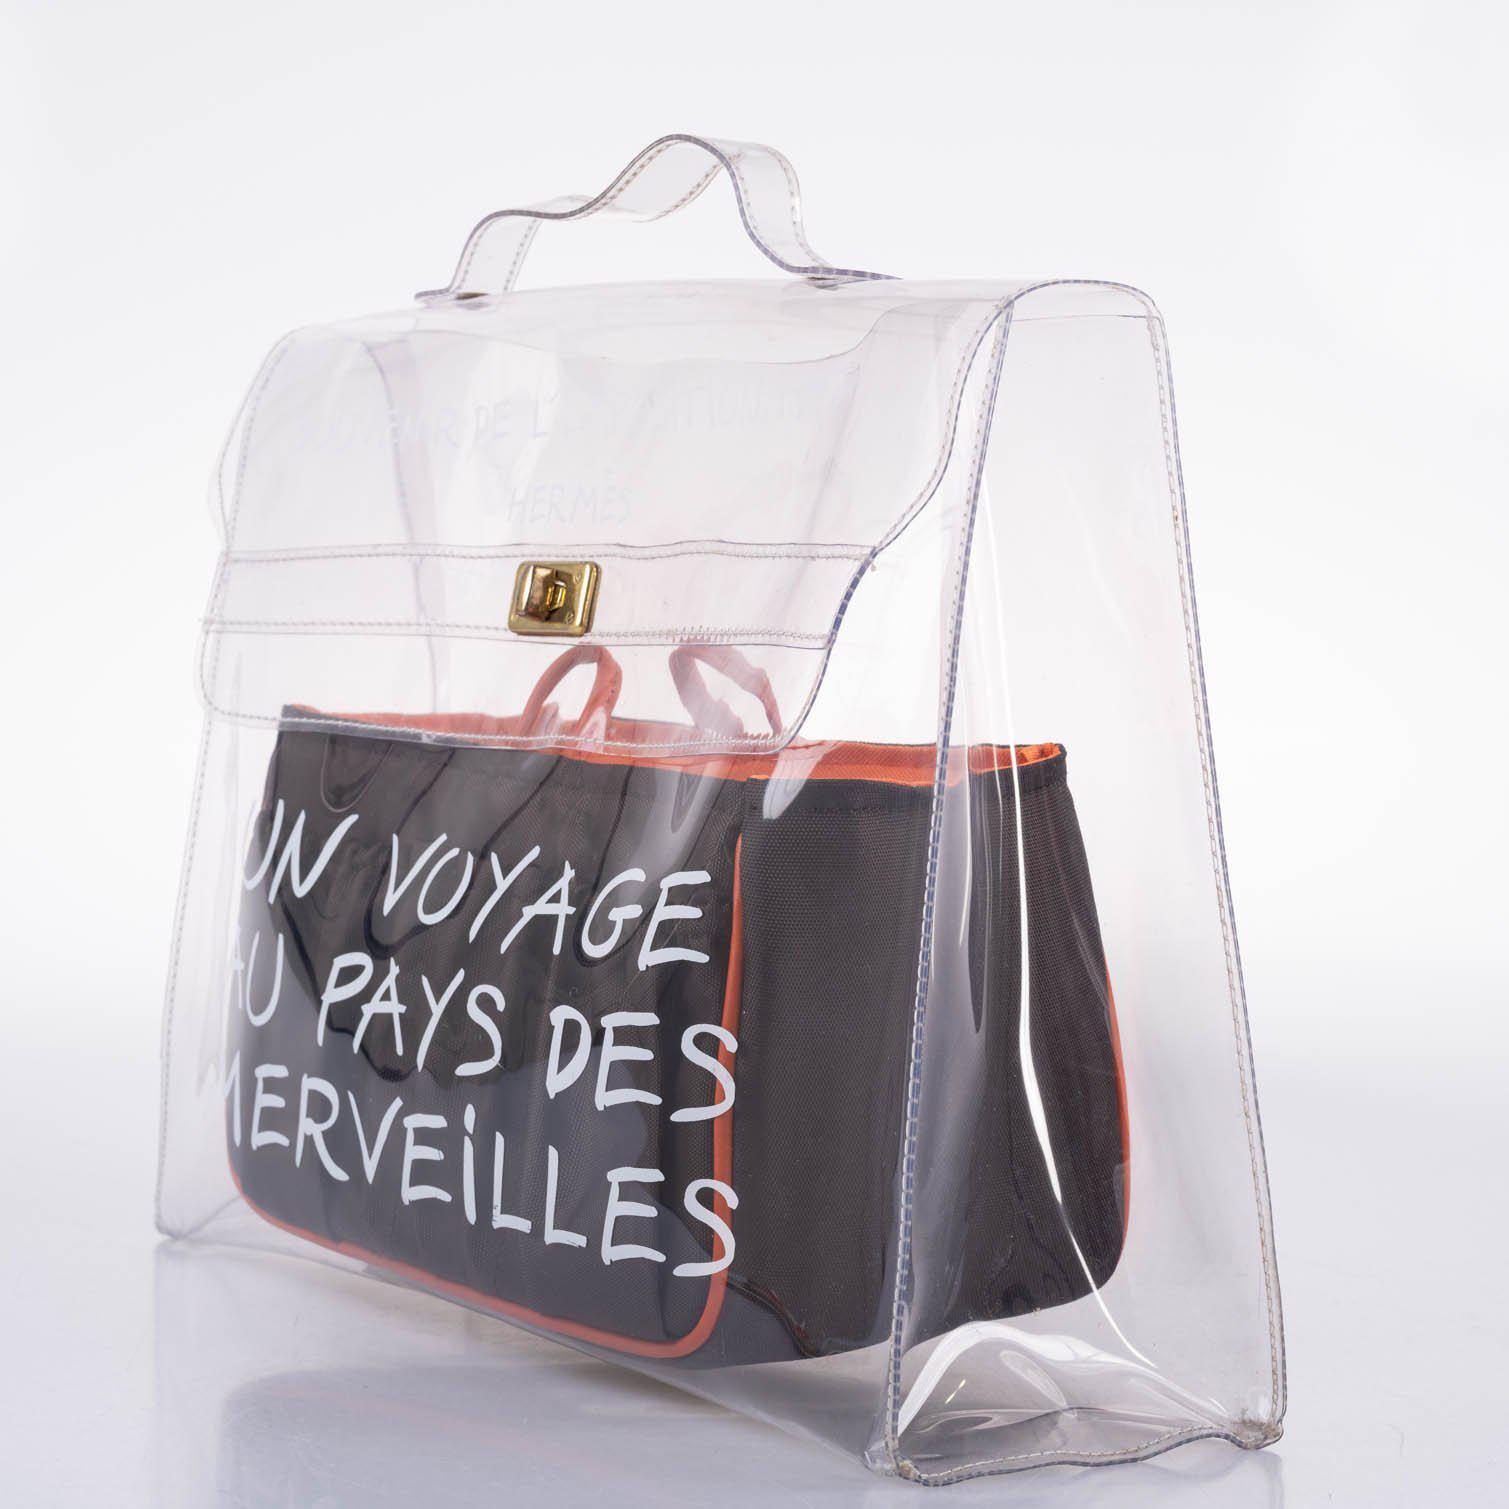 Hermès Kelly 40 Transparent Vinyl Beach Bag Souvenir De L’Exposition